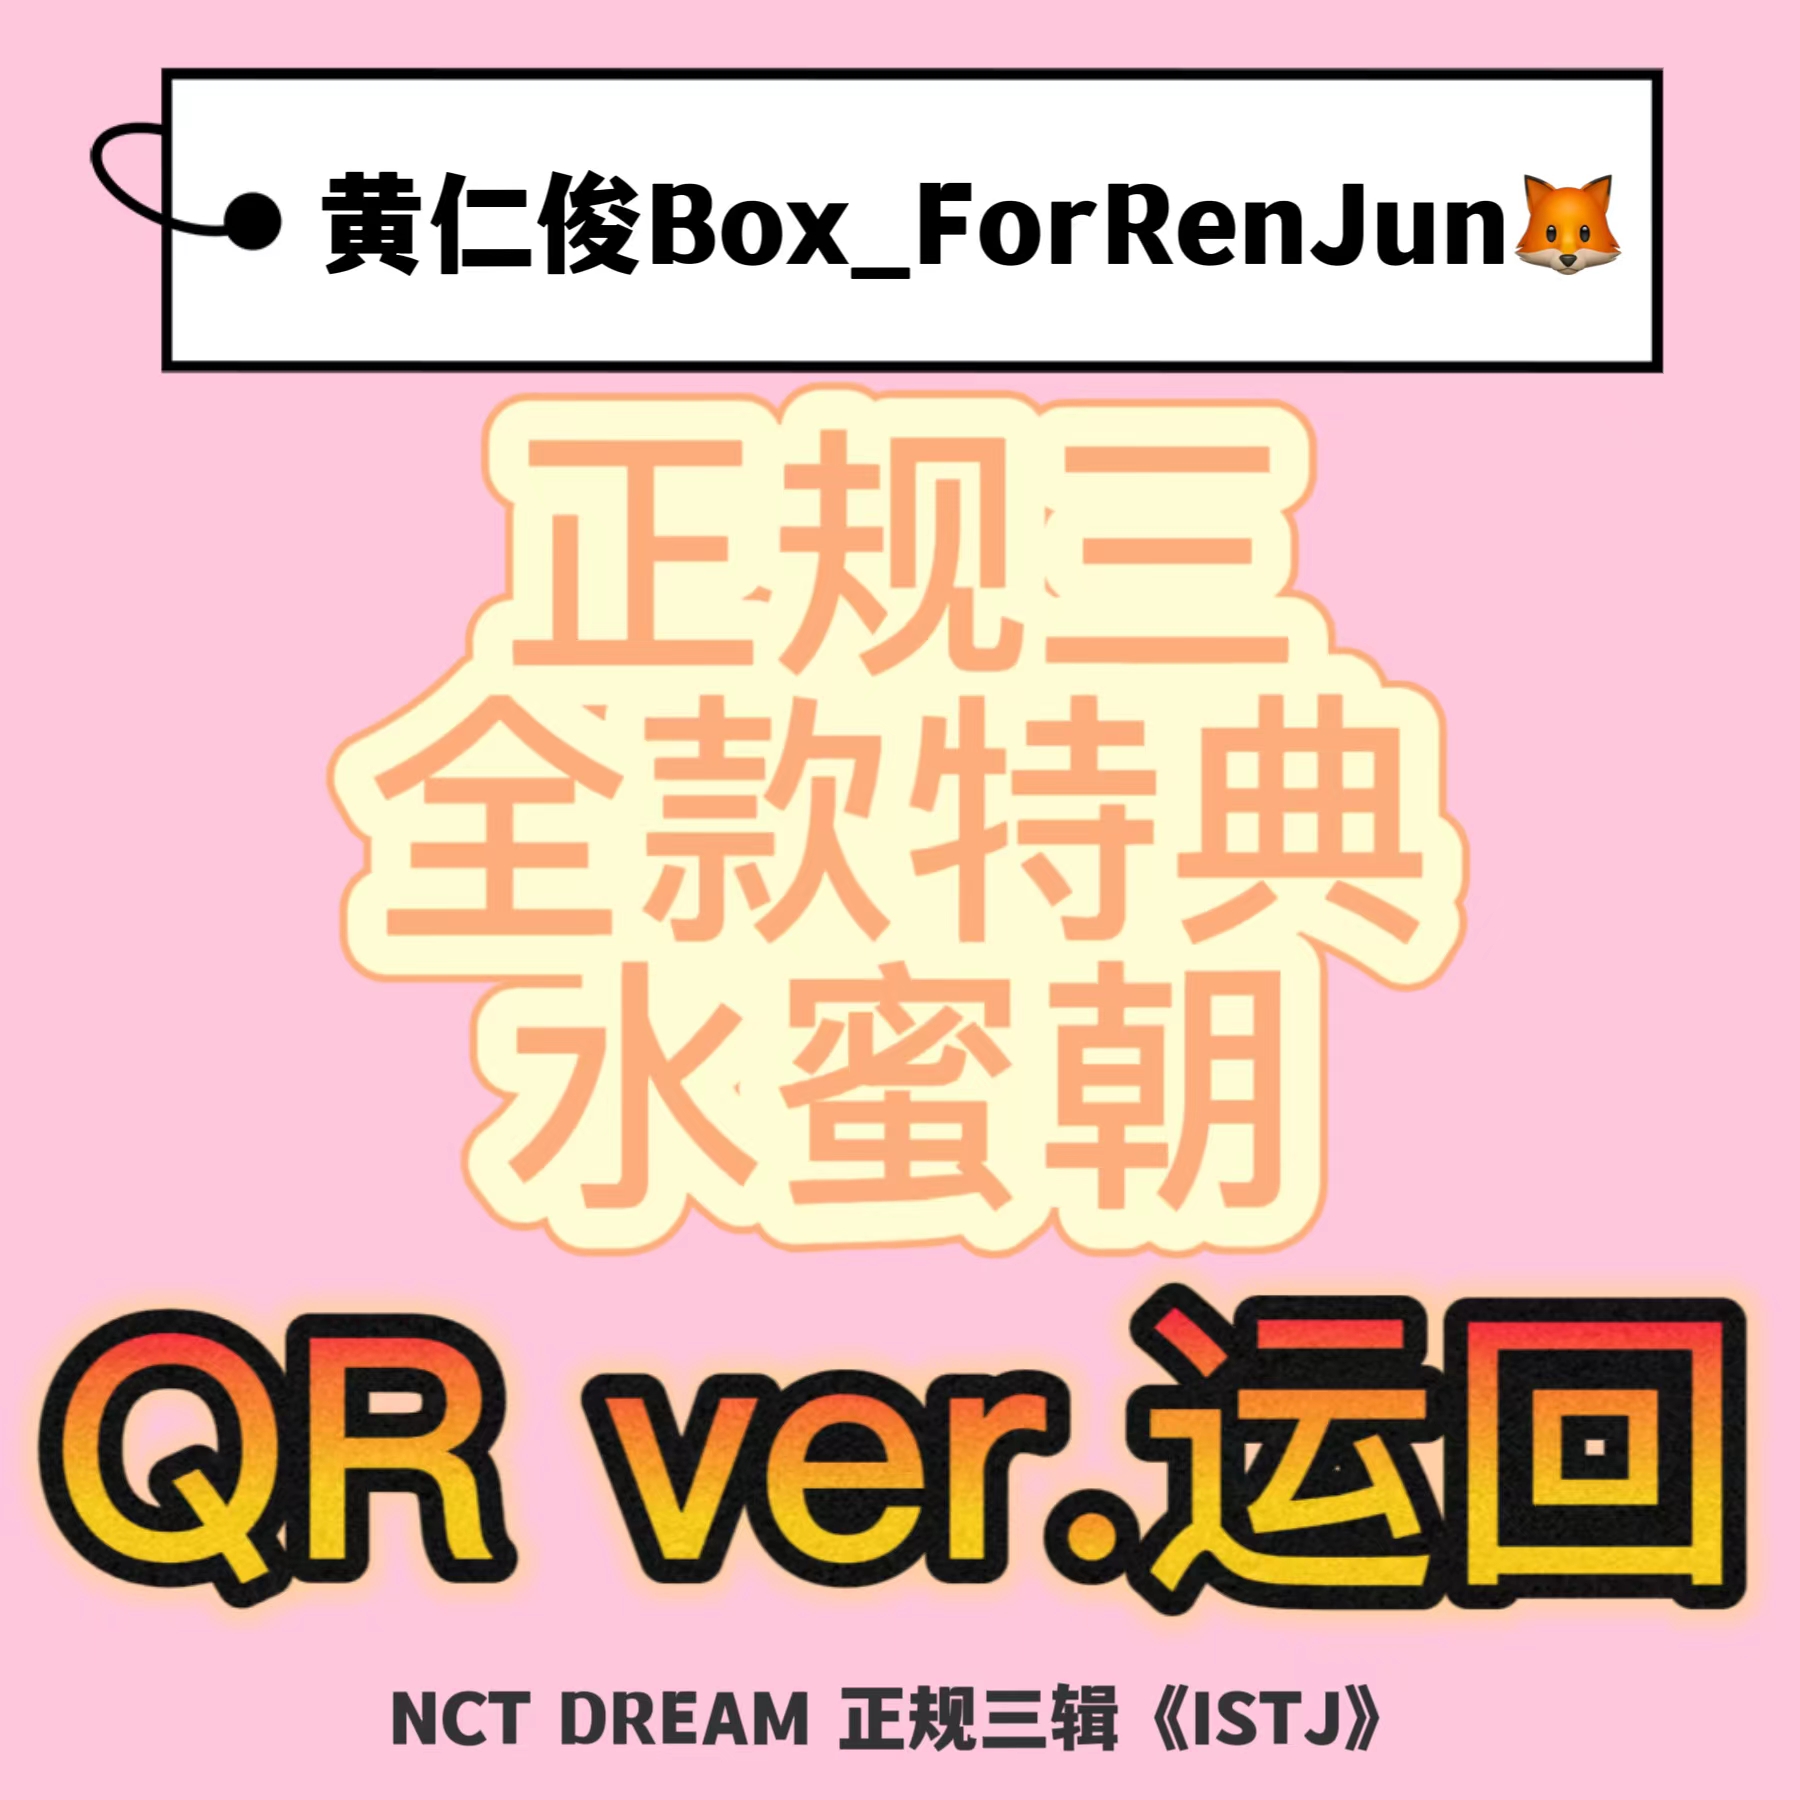 [全款 水蜜朝 特典专] NCT DREAM - 正规3辑 [ISTJ] (7DREAM QR Ver.) (Smart Album) (随机版本)_黄仁俊吧RenJunBar